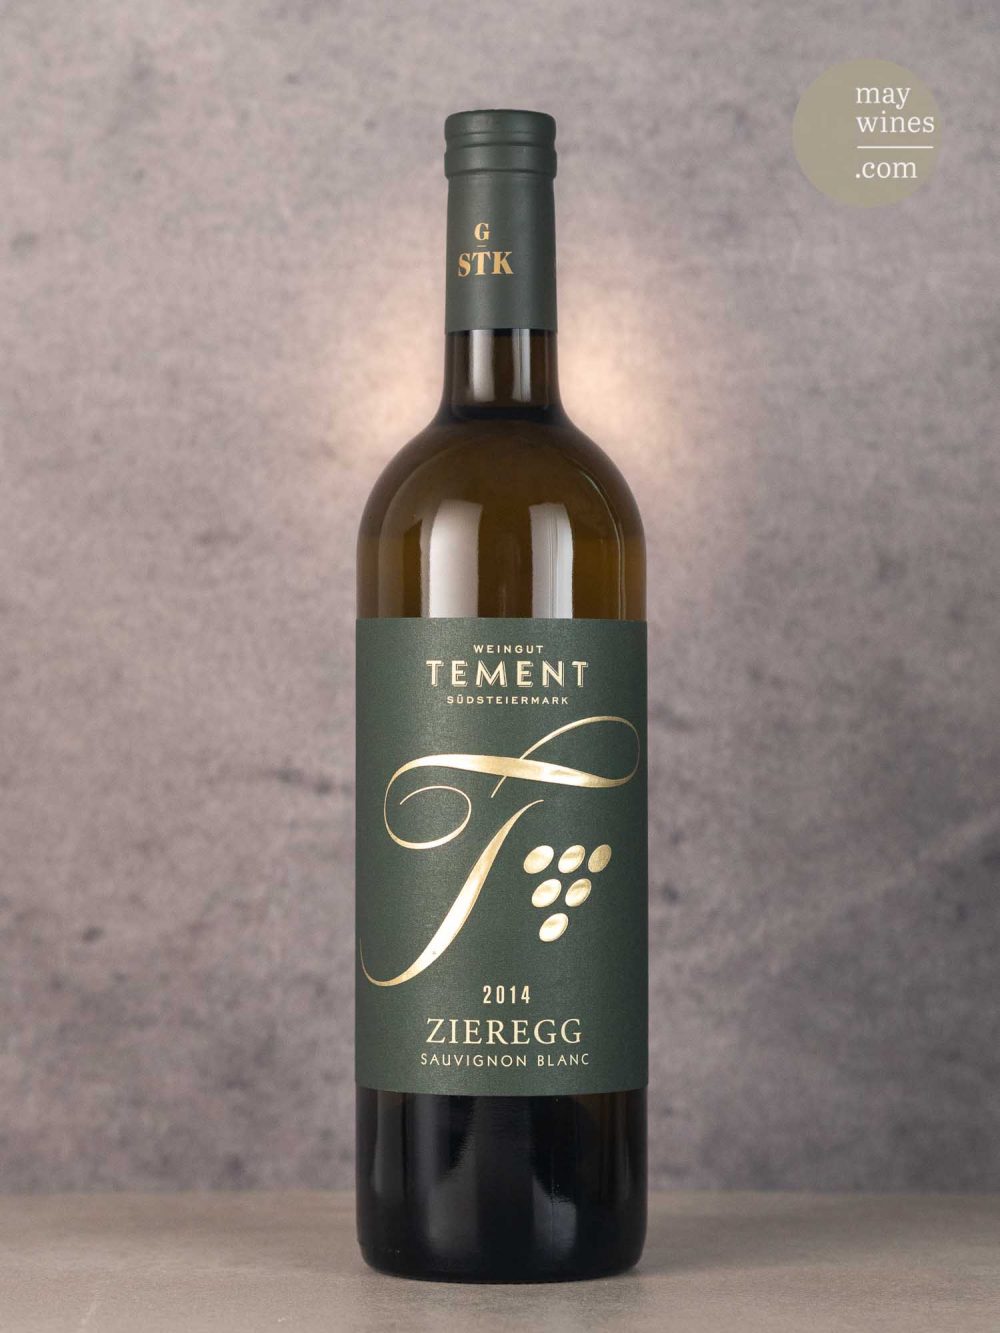 May Wines – Weißwein – 2014 Zieregg Sauvignon Blanc - Weingut Tement